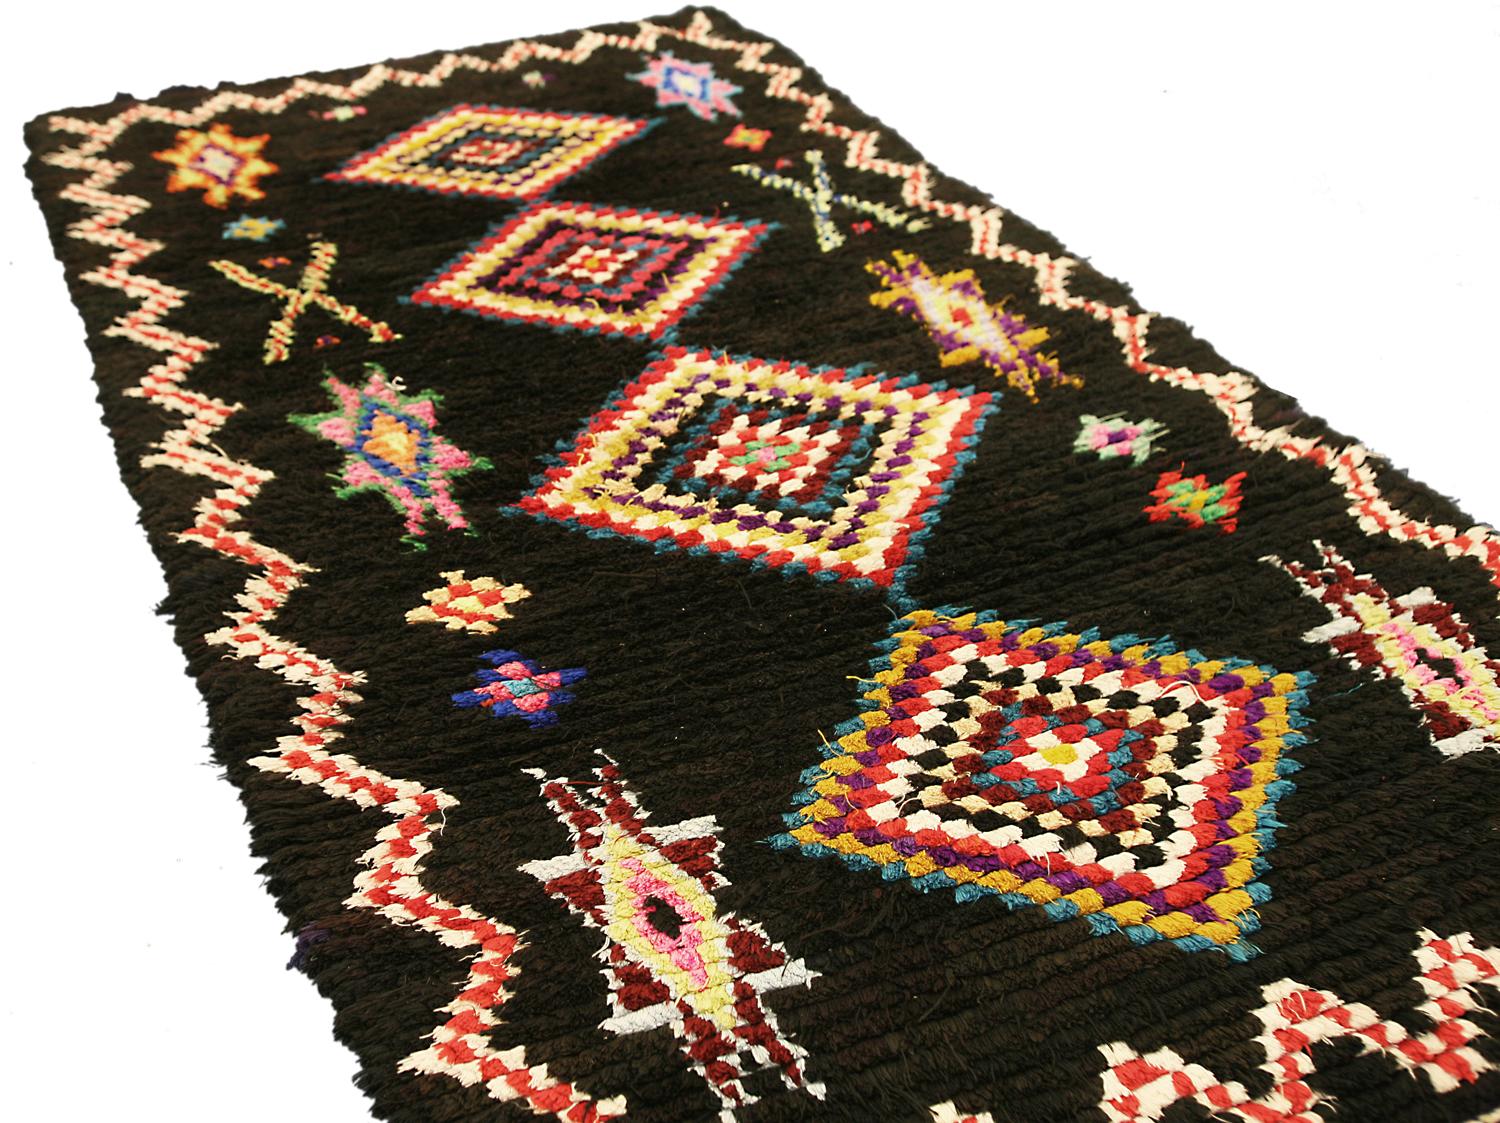 Dies ist eine semi-antike marokkanischen Marrakesch Teppich gewebt ca. 1950 und misst 176 x 91cm in der Größe. Dieses Teppichdesign besteht aus vier polychromen Mittelmedaillons, die von Sternmotiven auf einem tiefschwarzen Hintergrund flankiert